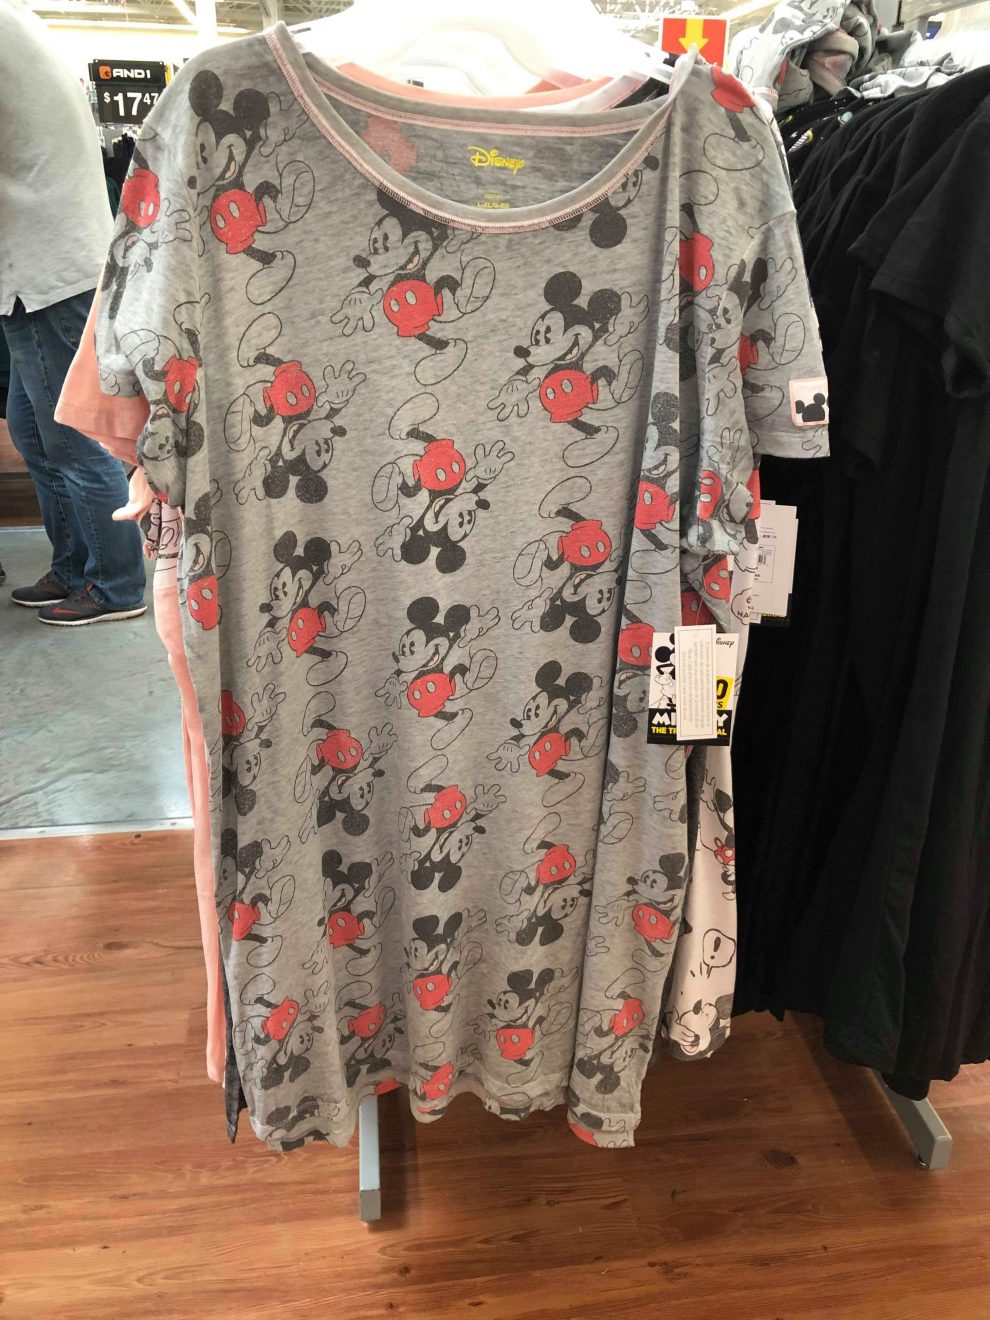 Magical Disney Sleepwear Has Arrived at Walmart! - Fashion